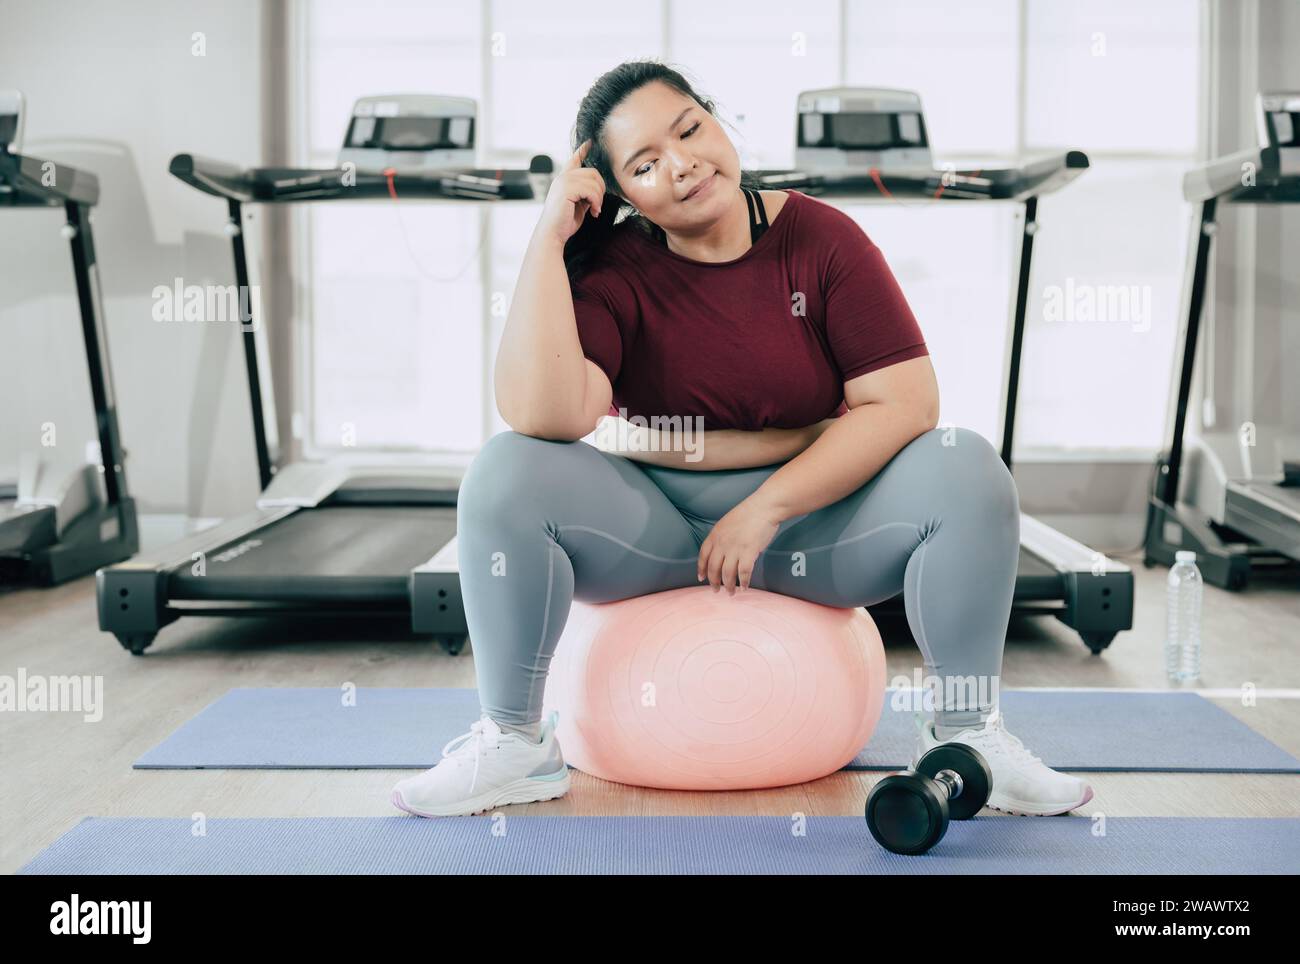 Frauen in Übergröße denken Fragestellung, asiatische fette weibliche, die im Fitness-Studio des Sportclubs sitzt Stockfoto